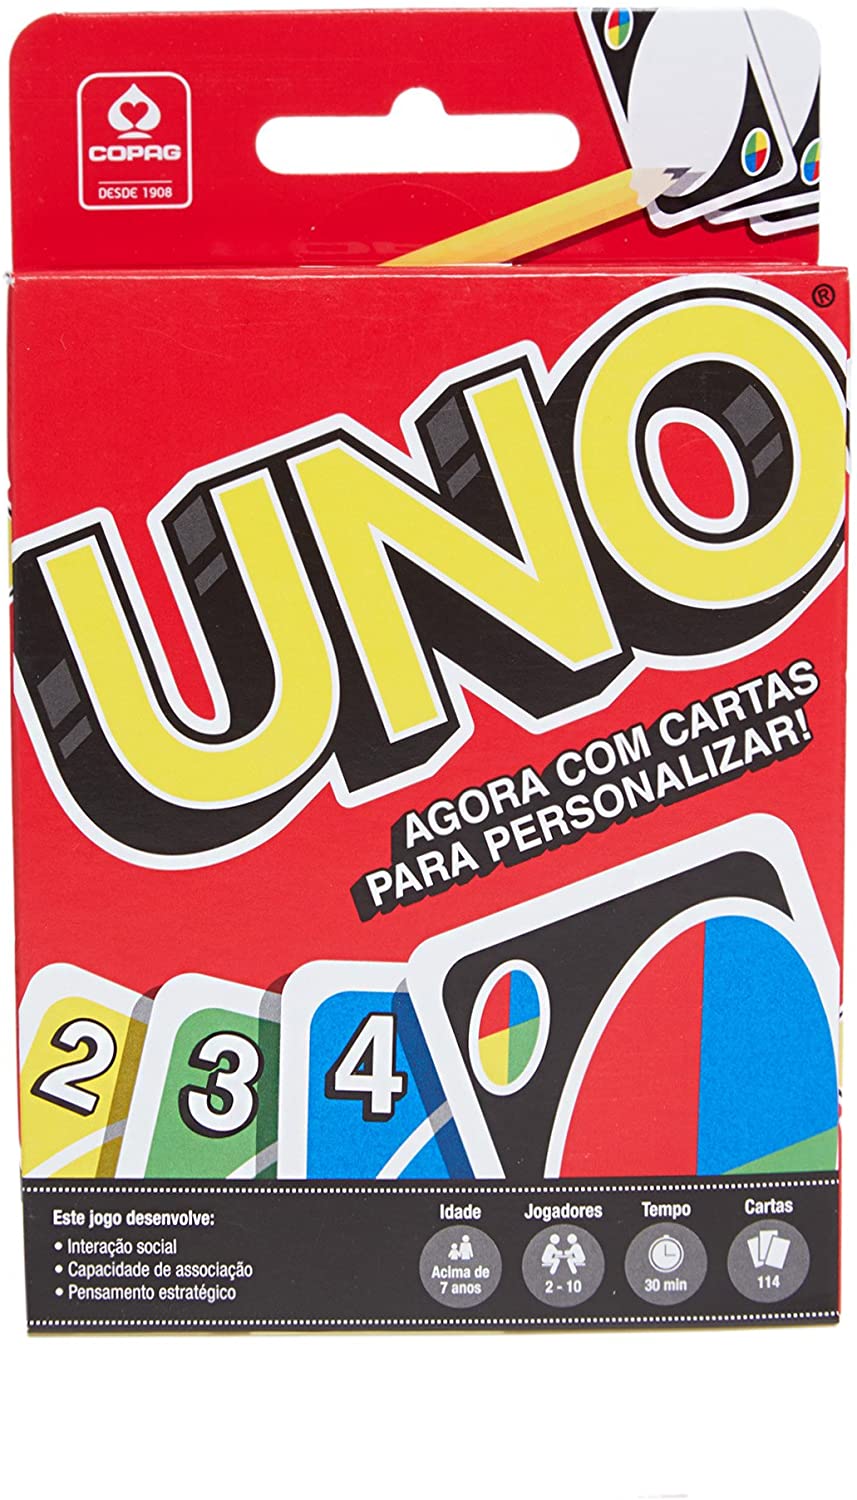 Jogo Uno: Promoções